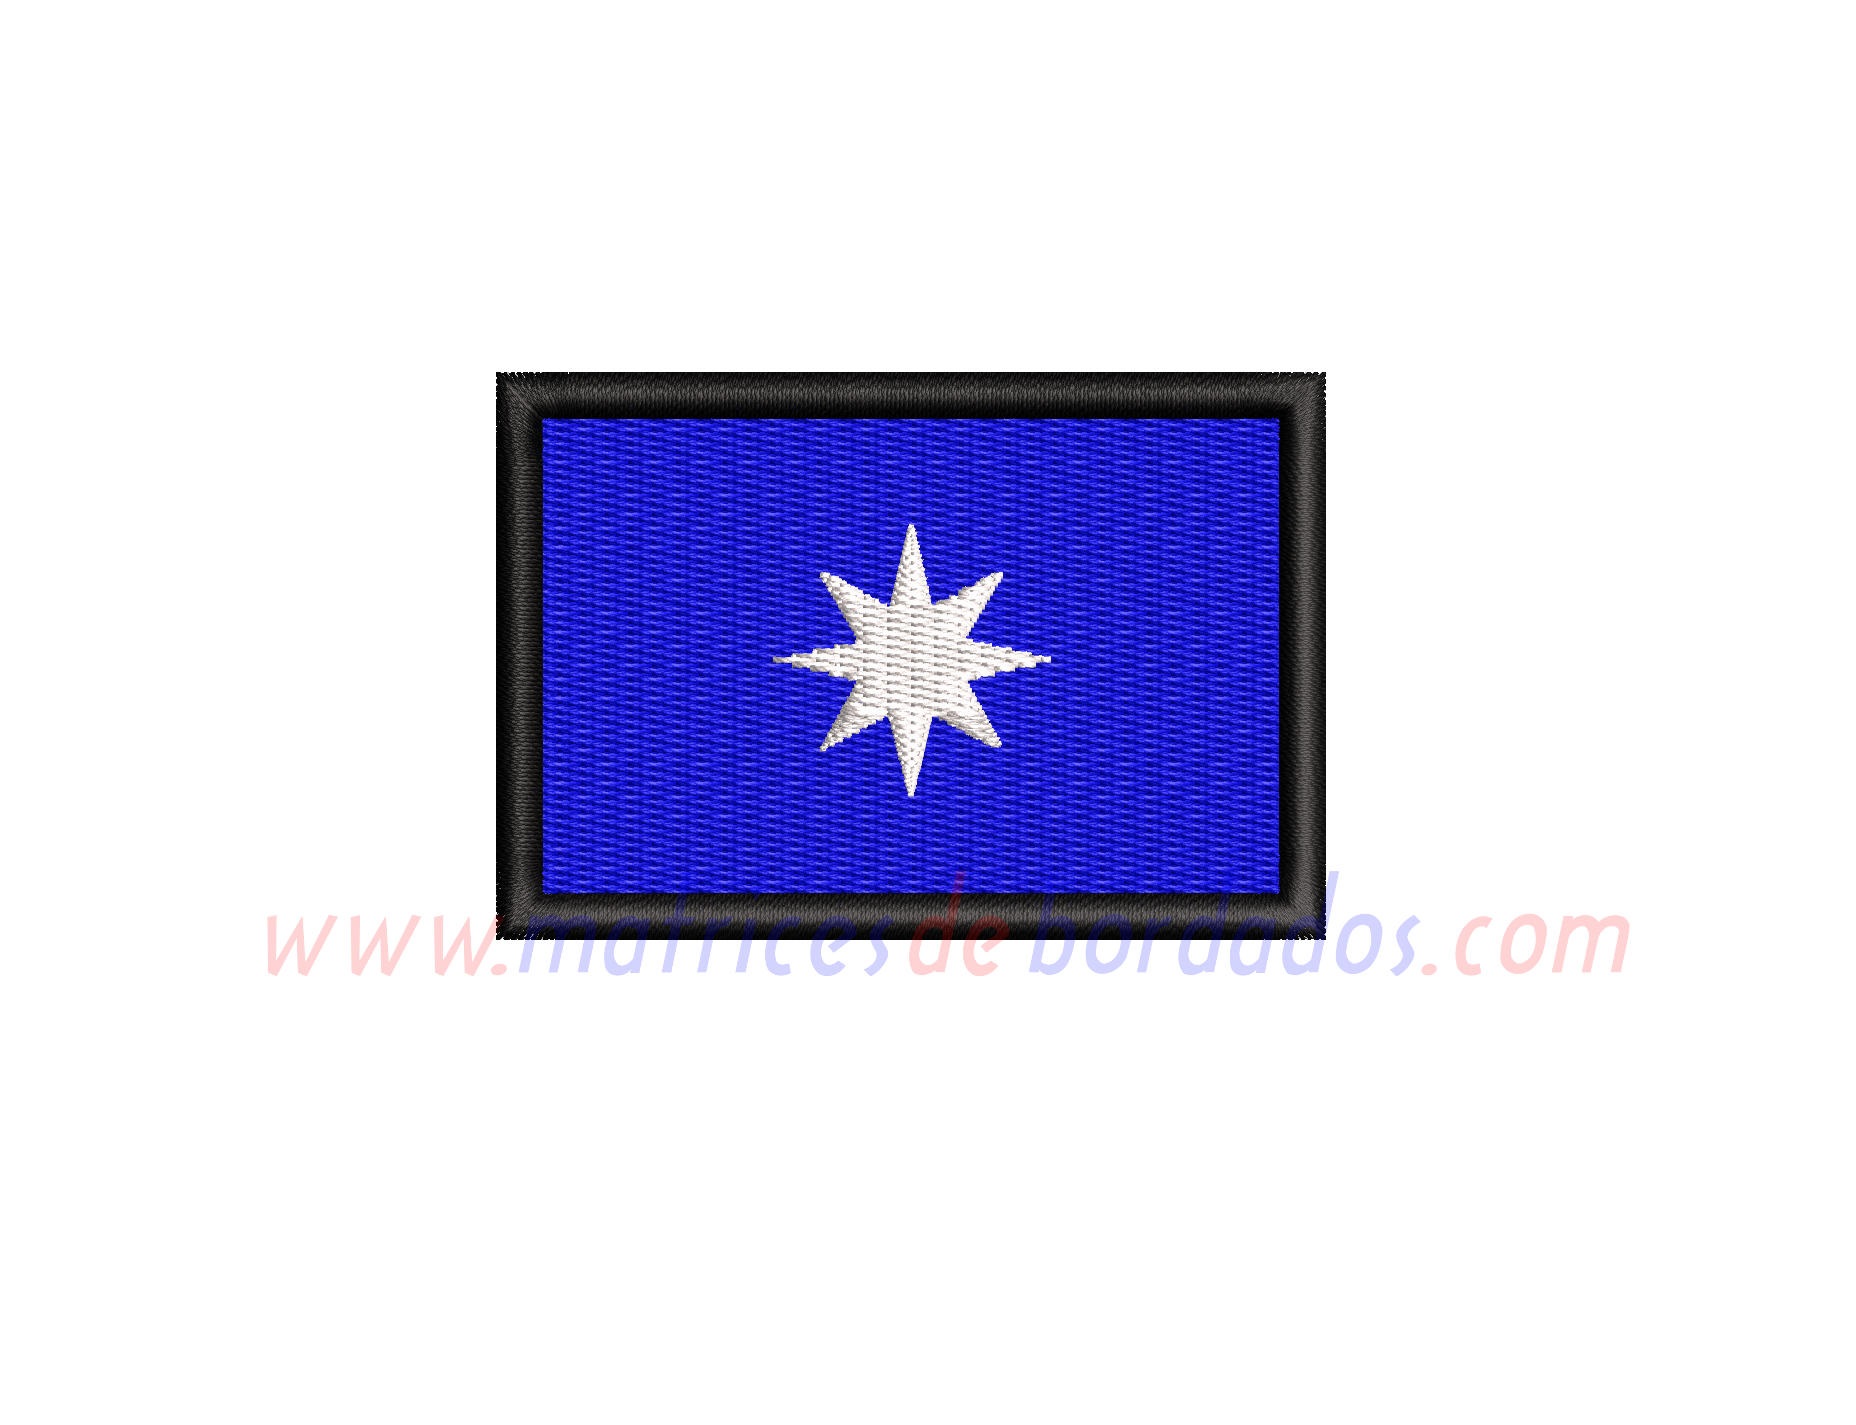 JS28VH - Bandera estrella de 8 puntas